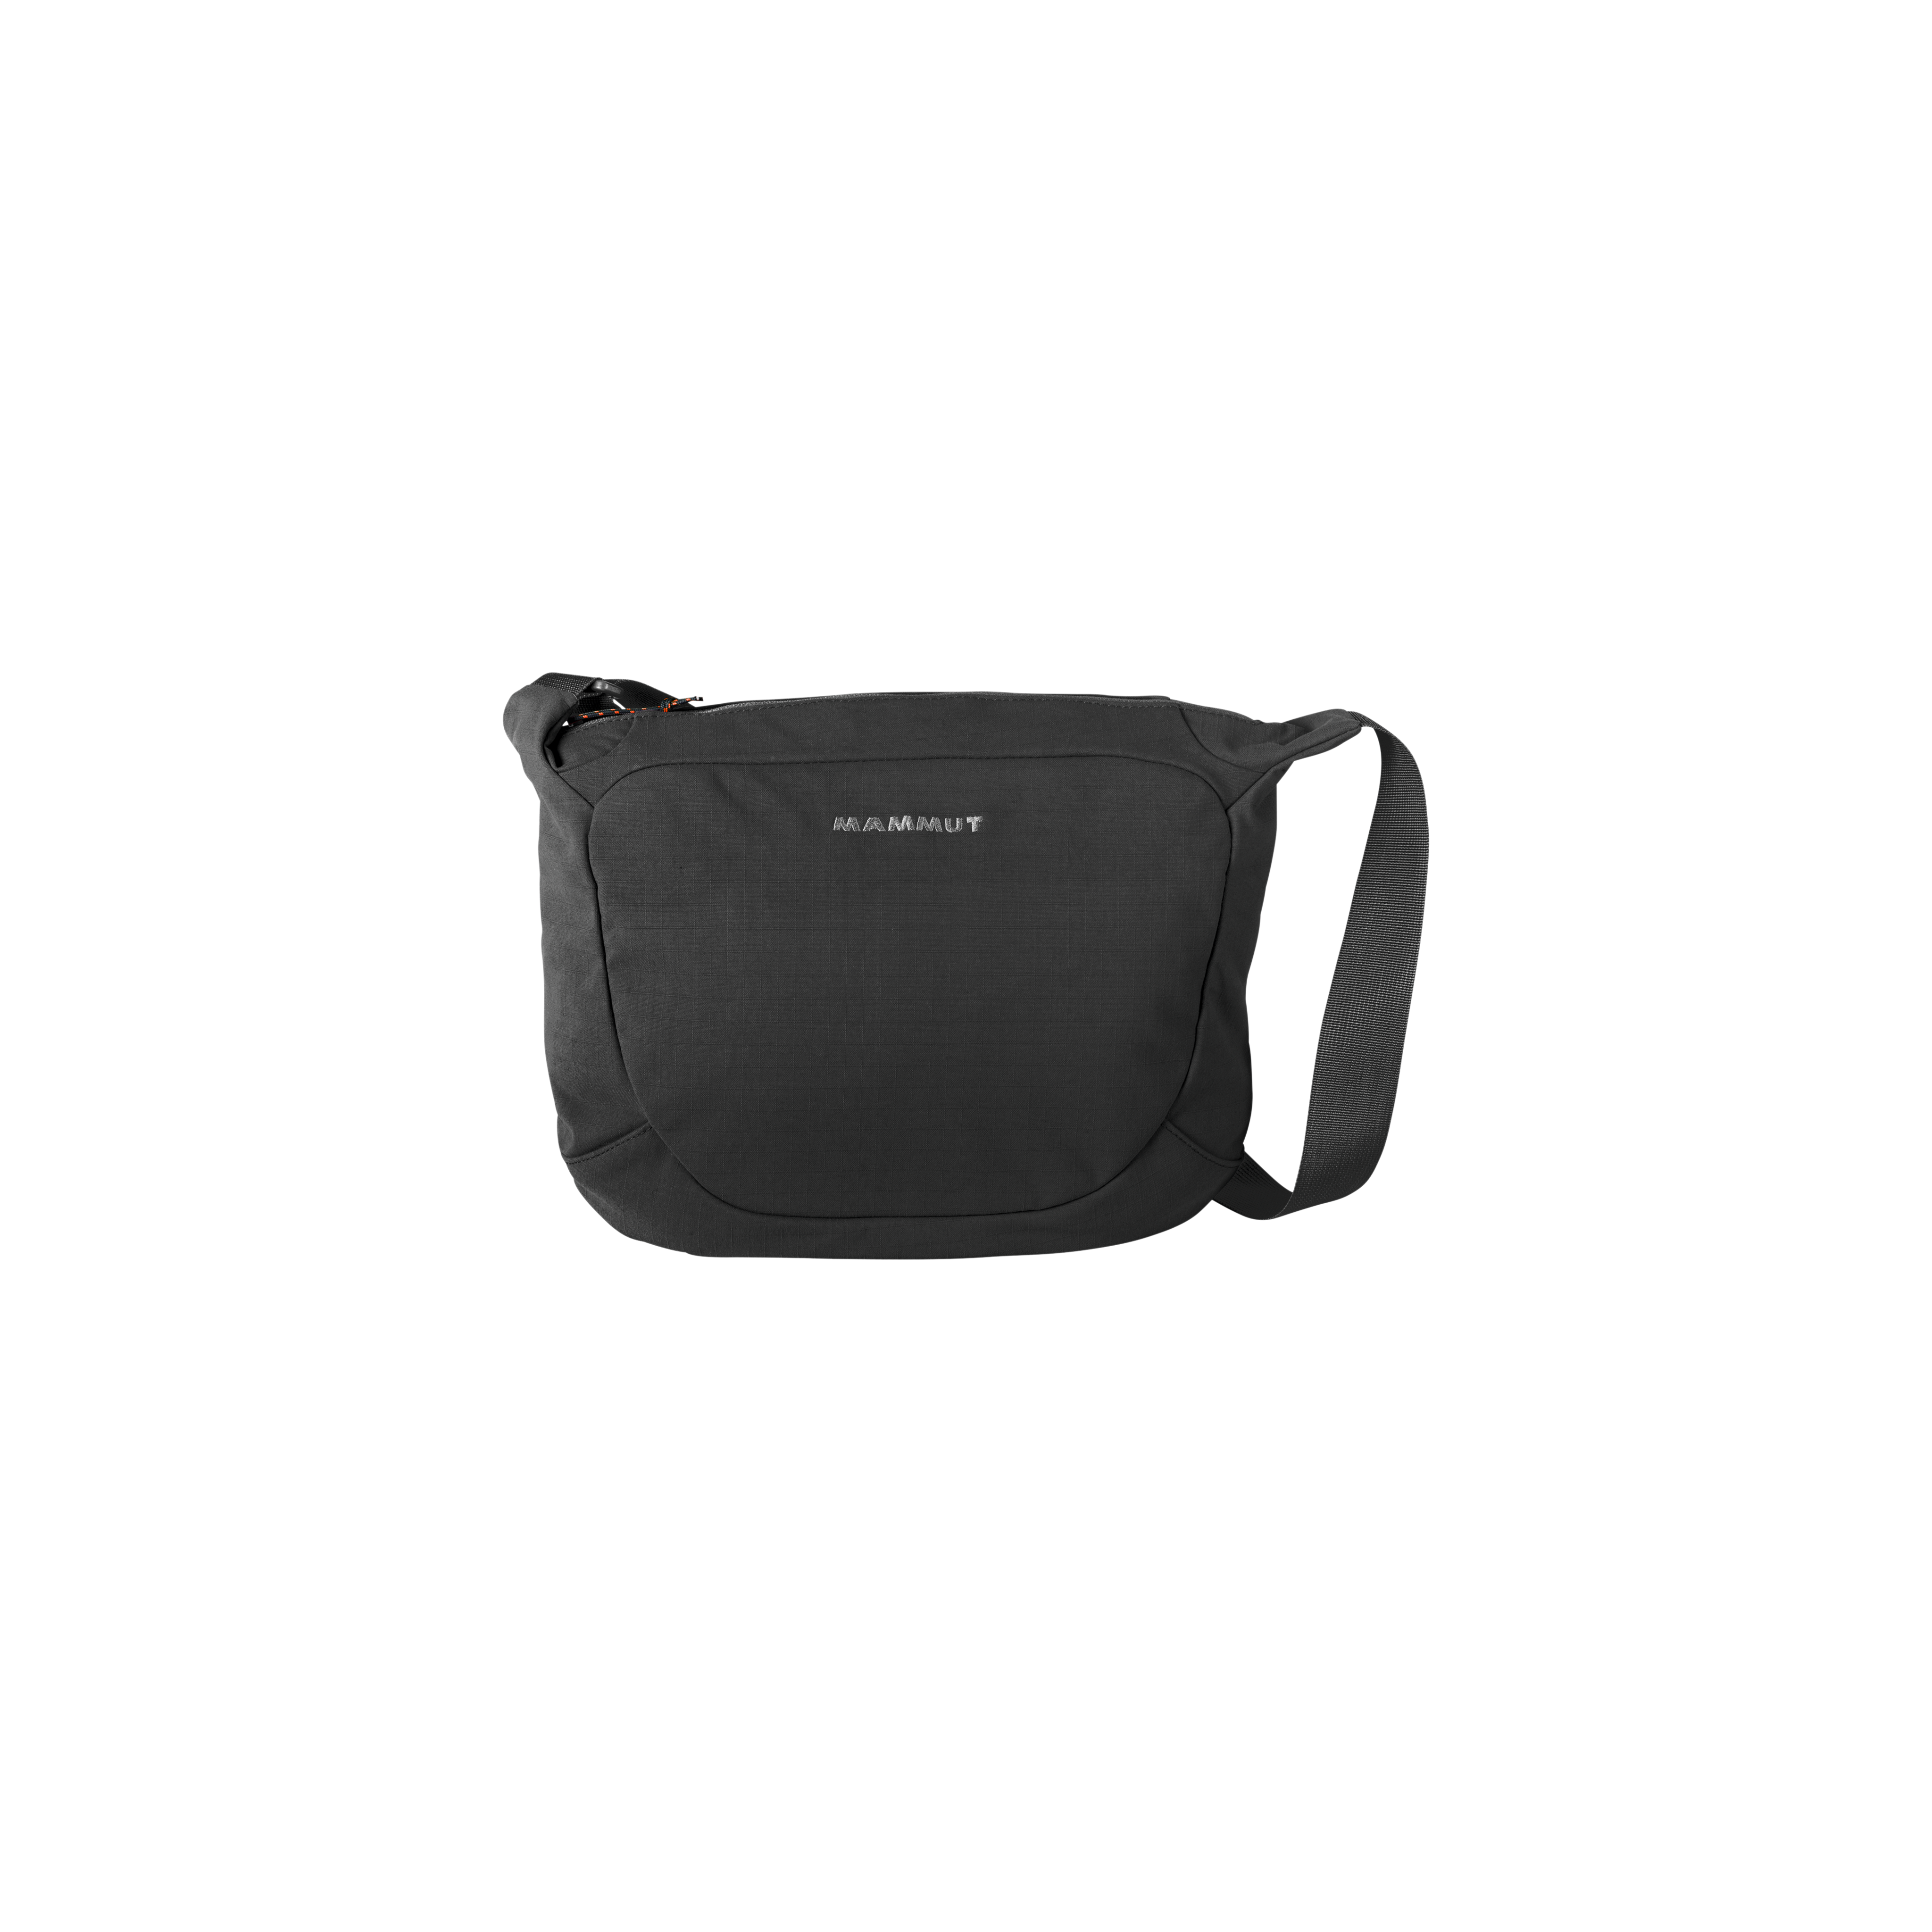 Shoulder Bag Round product image